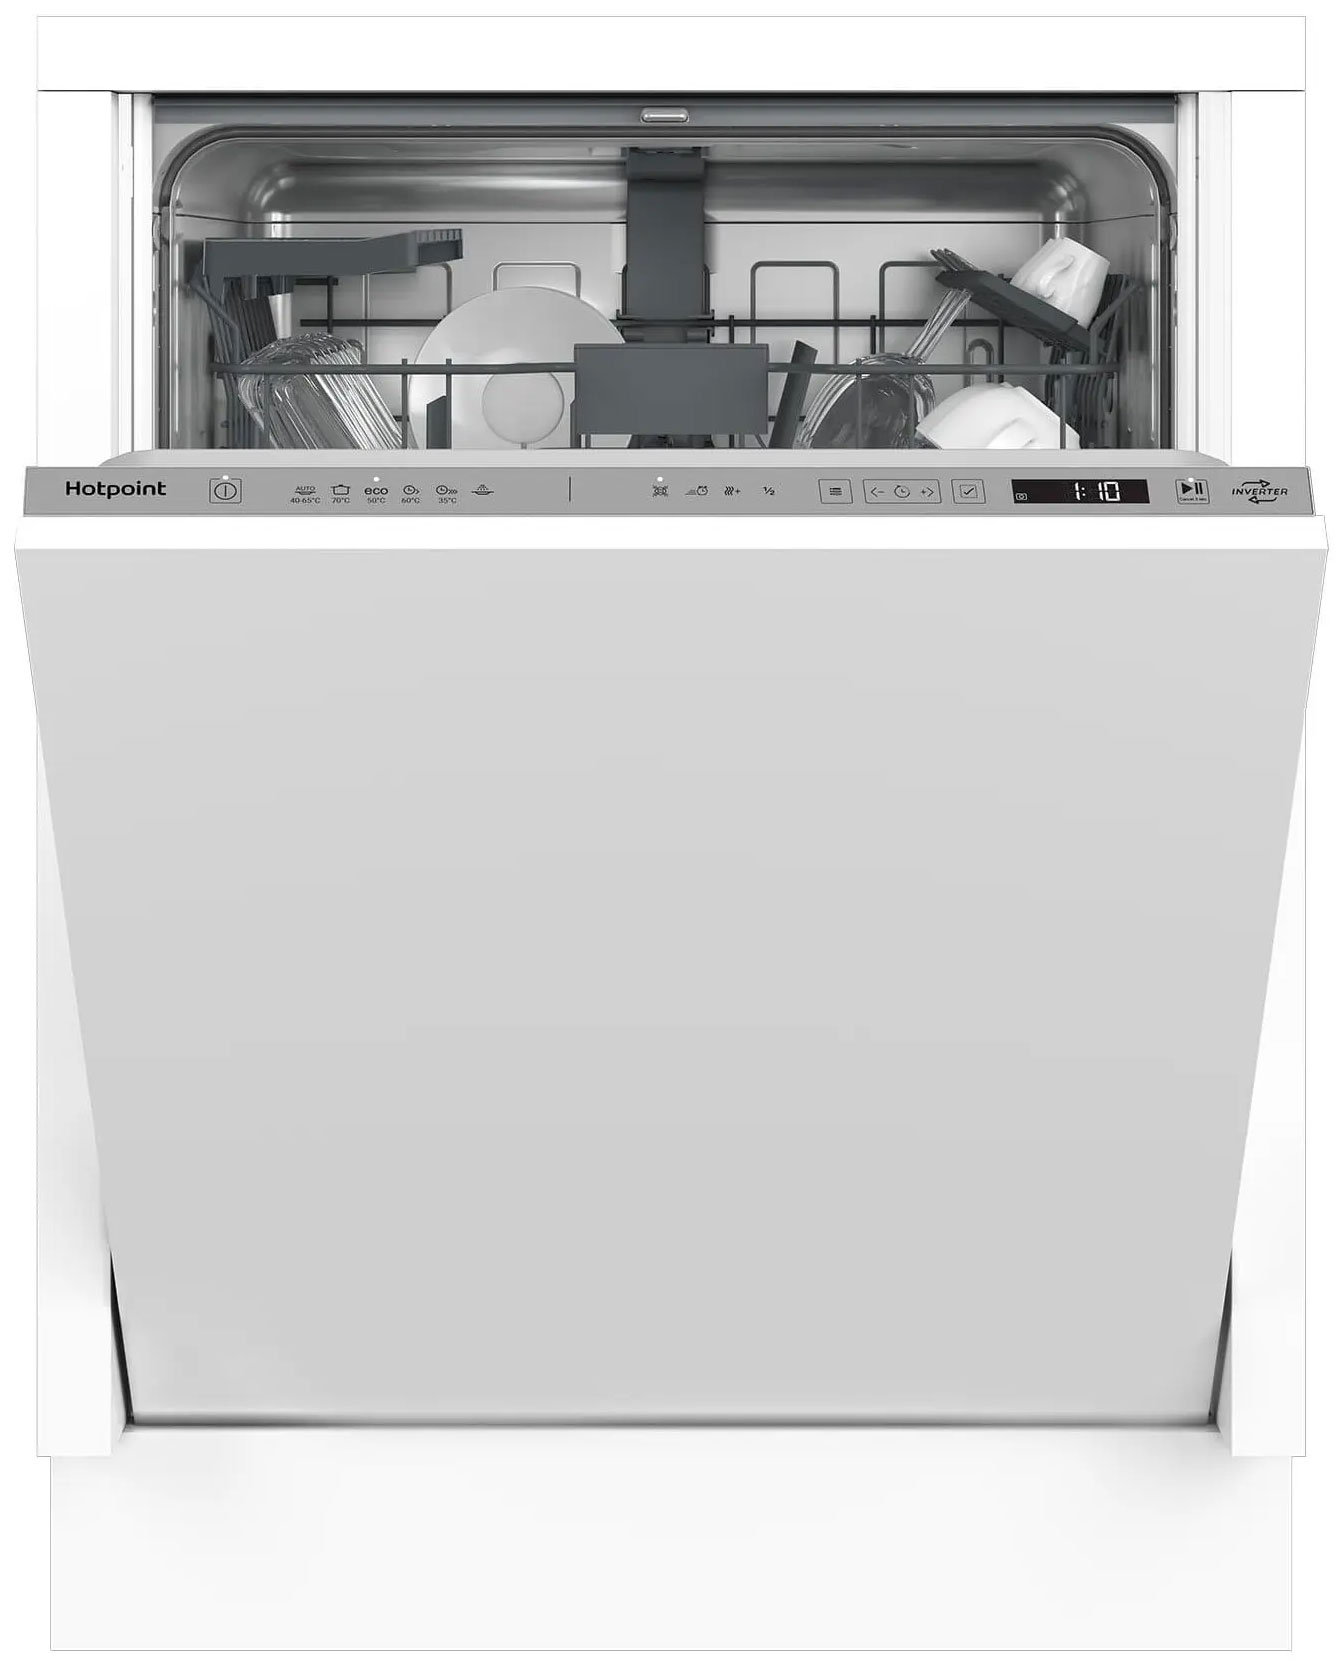 Встраиваемая посудомоечная машина Hotpoint HI 4D66 DW встраиваемая посудомоечная машина hotpoint hi 4d66 dw